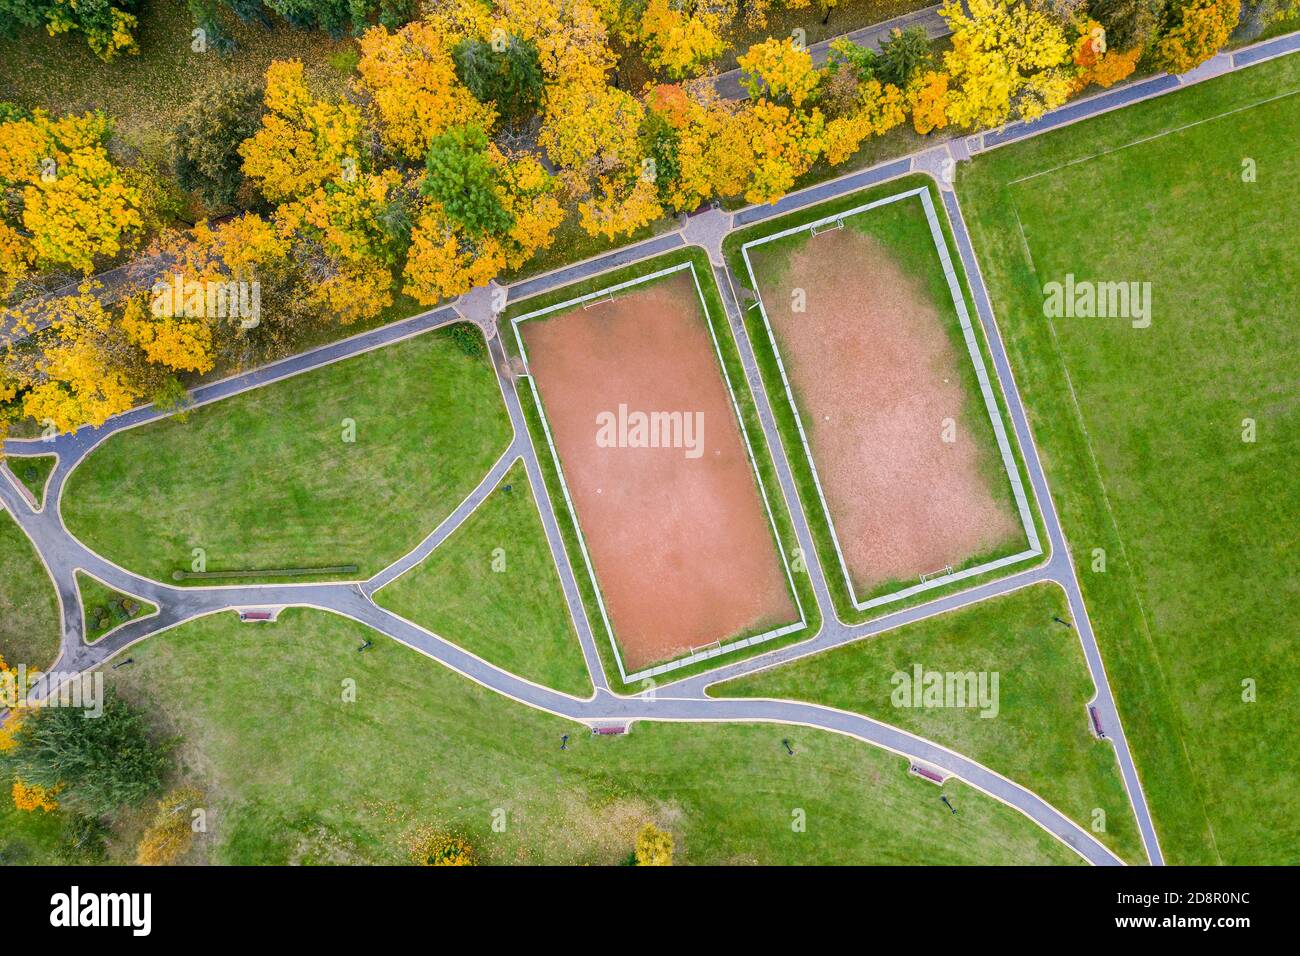 deux terrains de sports publics pour le football dans un parc d'automne coloré. vue du dessus photo aérienne Banque D'Images